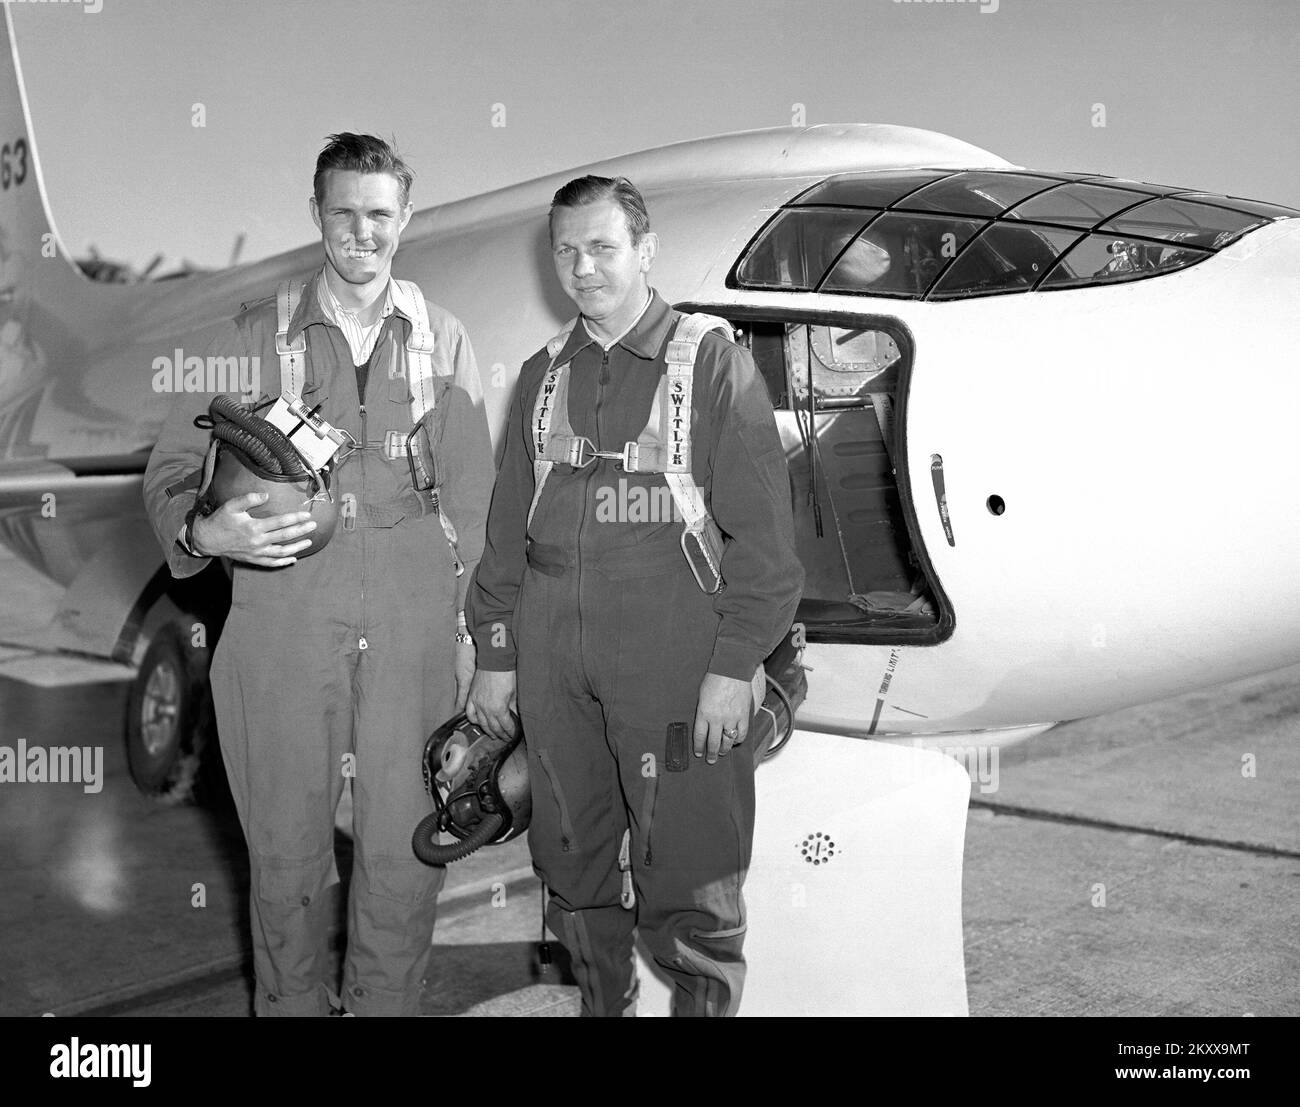 Die Bell Aircraft Corporation X-1-2 und zwei der NACA-Piloten, die das Flugzeug flogen. Der linke ist Robert Champine, der andere Herbert Hoover. Die X-1-2 war außerdem mit dem 10-prozentigen Flügel und 8-prozentigem Leitwerk ausgestattet, das mit einem XLR-11-Raketenmotor angetrieben wurde und das Flugzeug am 9. Dezember 1946 seinen ersten angetriebenen Flug mit Chalmers 'Slick' Goodlin an den Kontrollen machte. Wie beim X-1-1 untersuchte das X-1-2 weiterhin das transonische/überschalltechnische Flugregime. NACA-Pilot Herbert Hoover wurde der erste Zivilist, der Mach 1, 10. März 1948 flog. X-1-2 flog bis zum 23. Oktober 1951 und wurde fertiggestellt Stockfoto